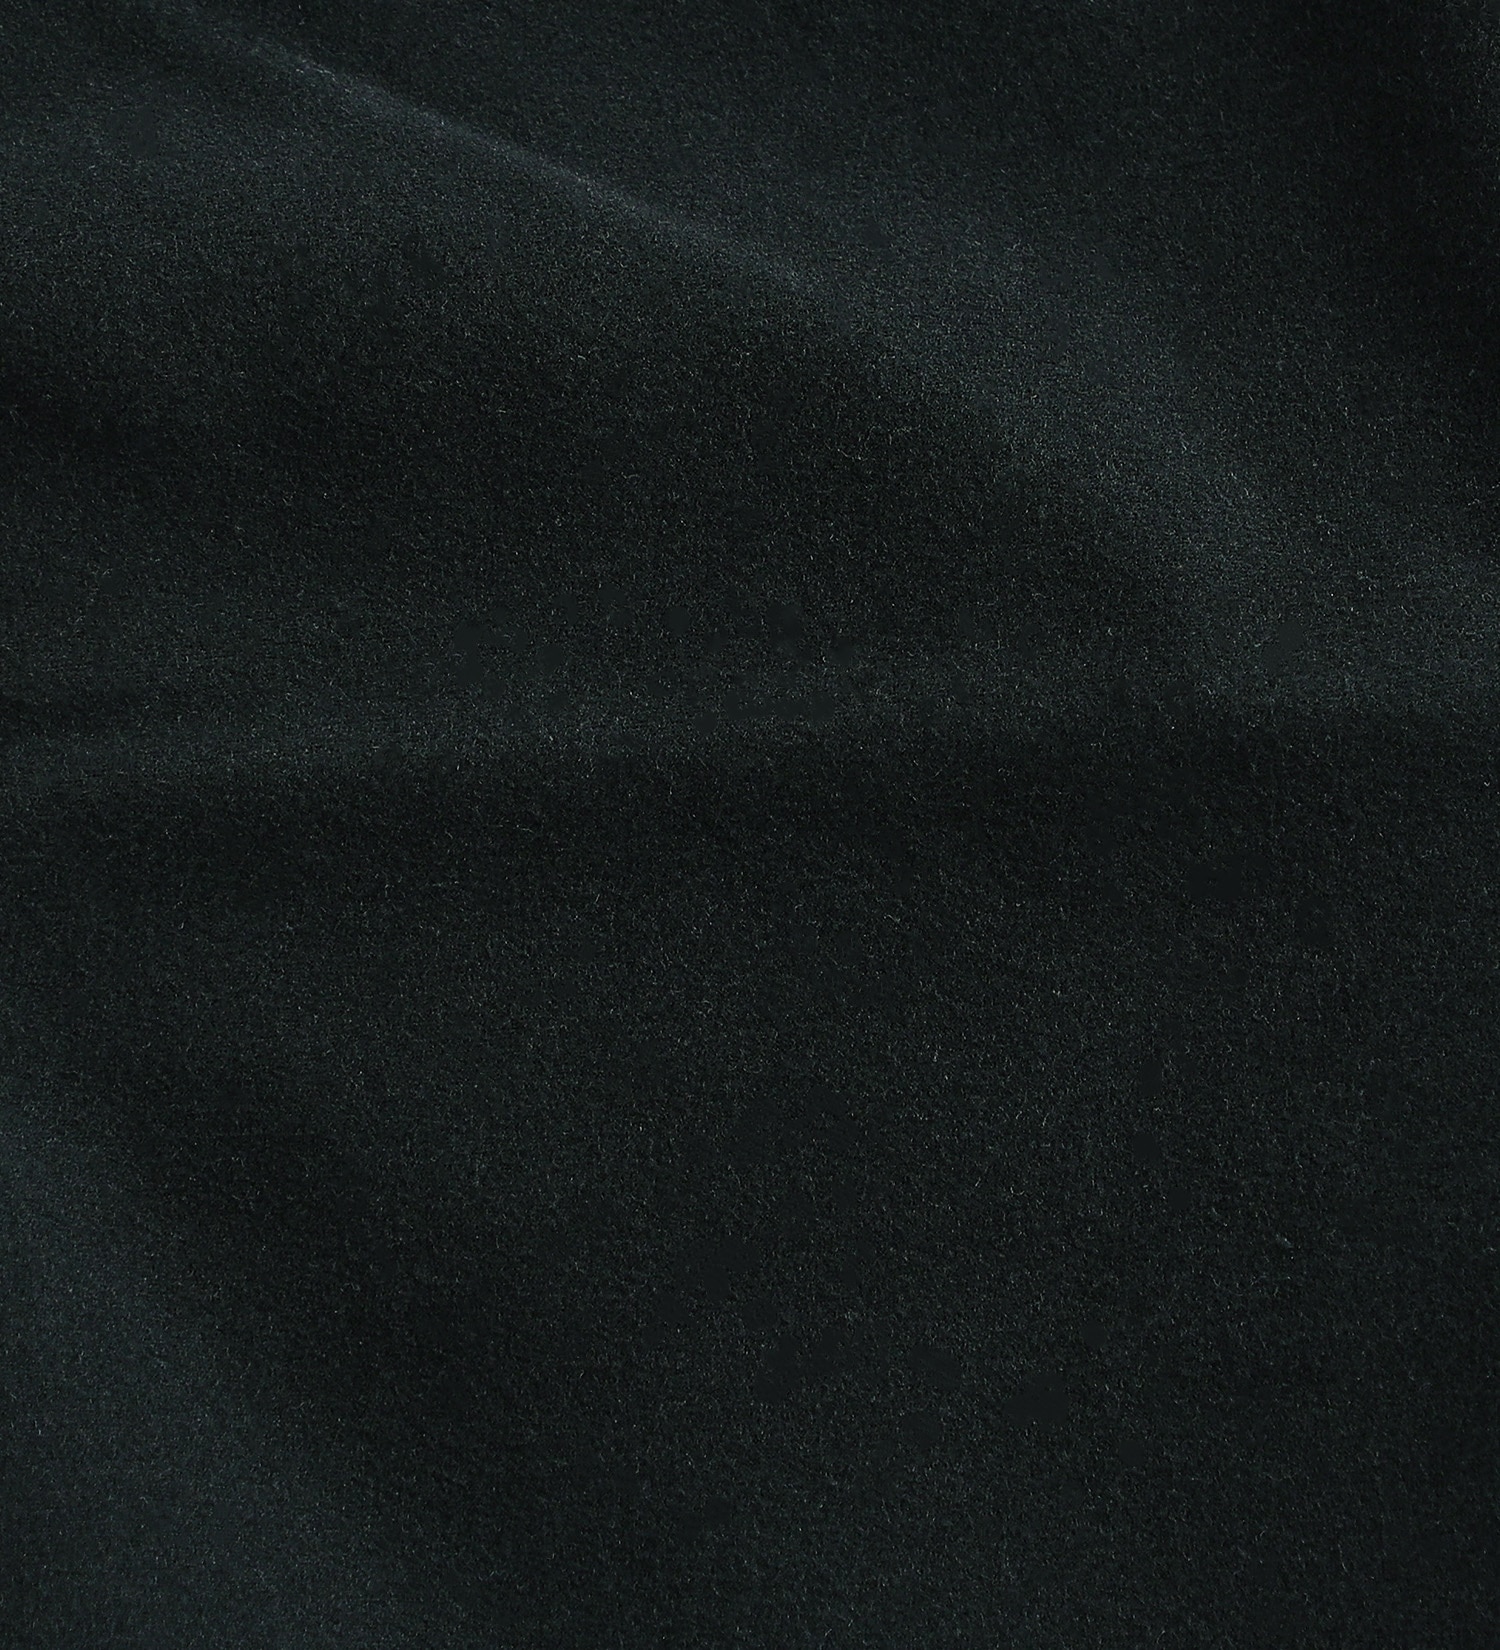 EDWIN(エドウイン)の【カート割】【SALE】2層で暖かい EDWIN インターナショナルベーシック レギュラーストレートパンツ403 WILD FIRE 2層ボンディング構造 【暖】|パンツ/パンツ/メンズ|ブラック